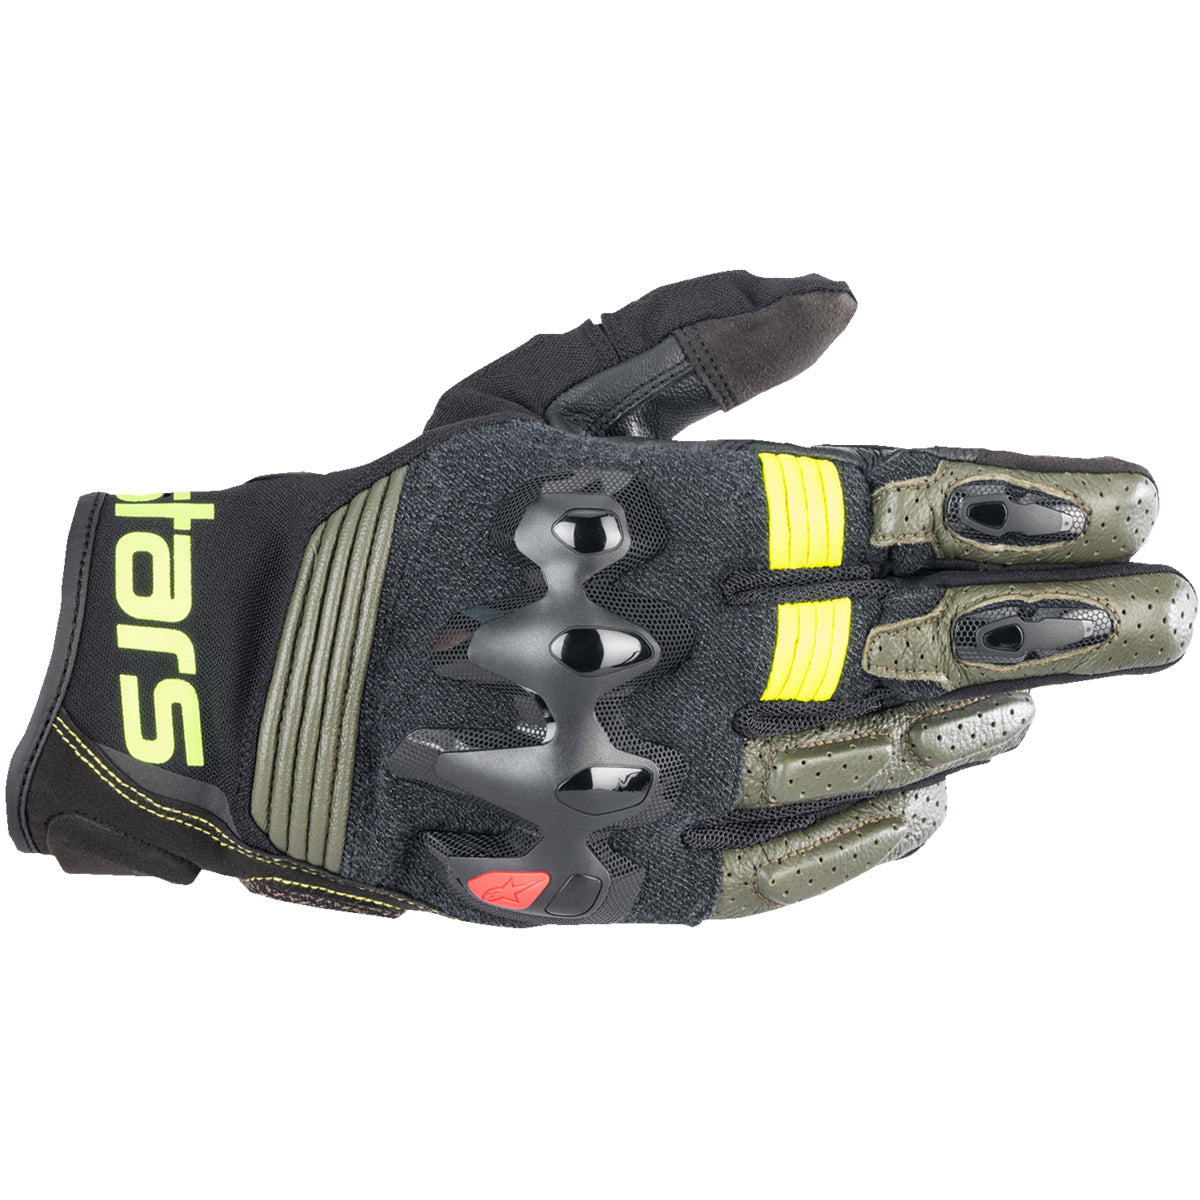 Alpinestars Halo Leather Gloves